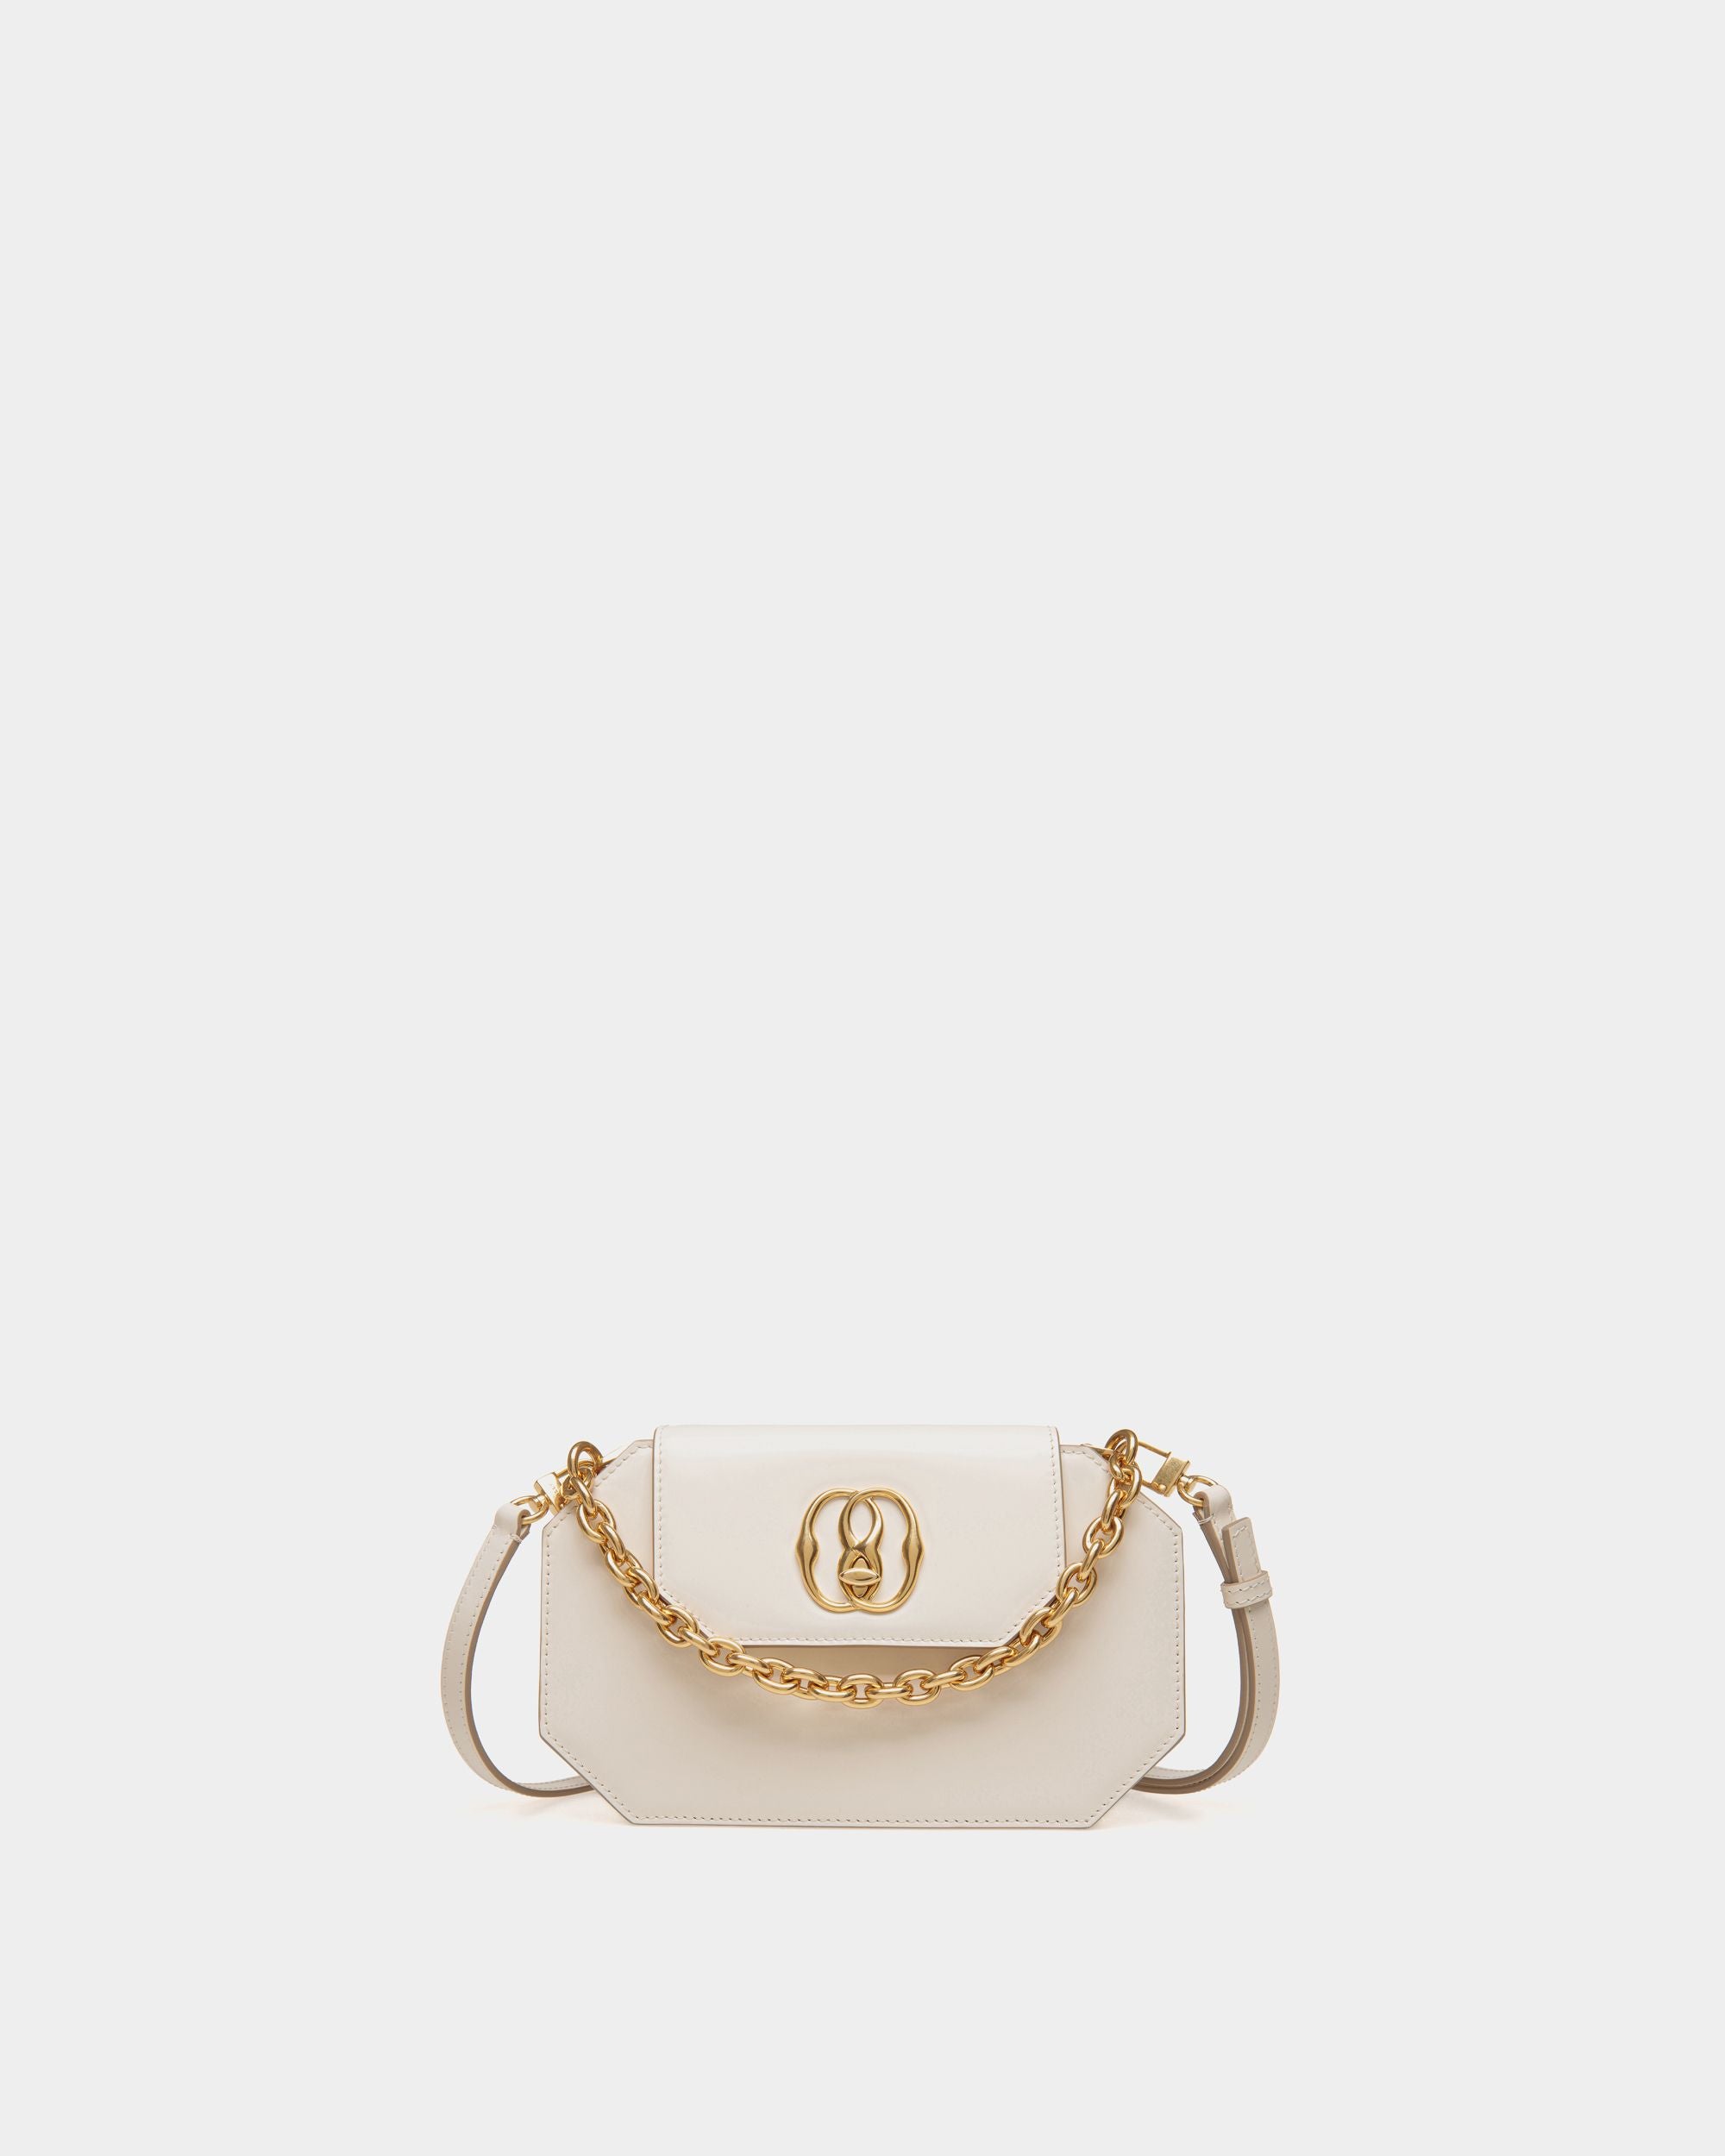 Emblem | Minibag für Damen aus weißem Lackleder | Bally | Still Life Vorderseite